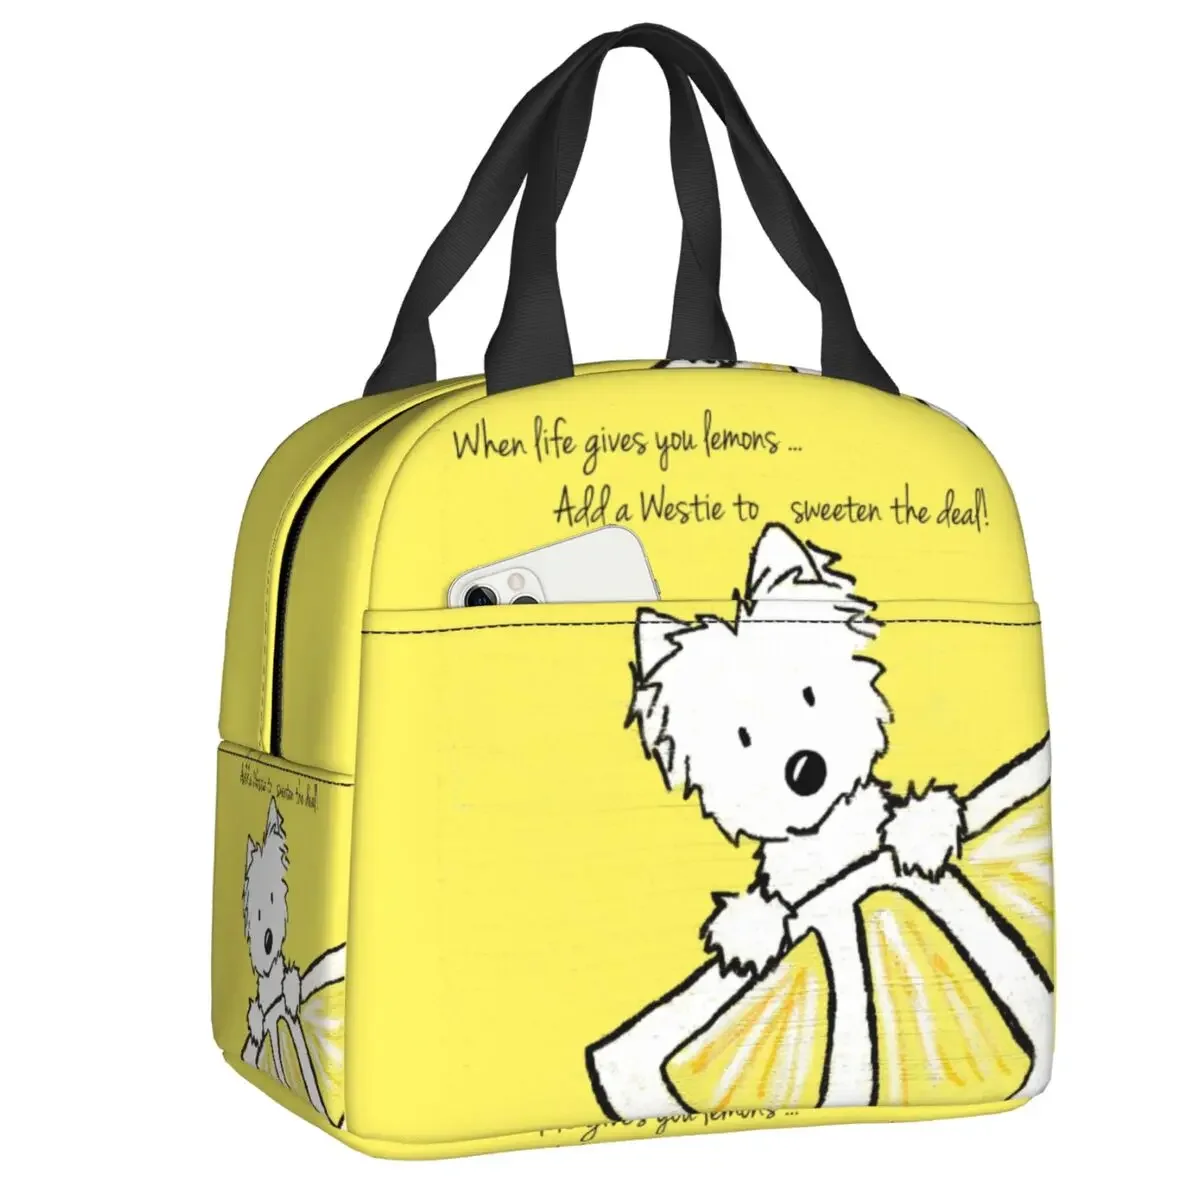 

Life Lemons Westie изолированные ланч-сумки для пикника на открытом воздухе West Highland White Terrier портативный охладитель термальный Ланч-бокс для детей